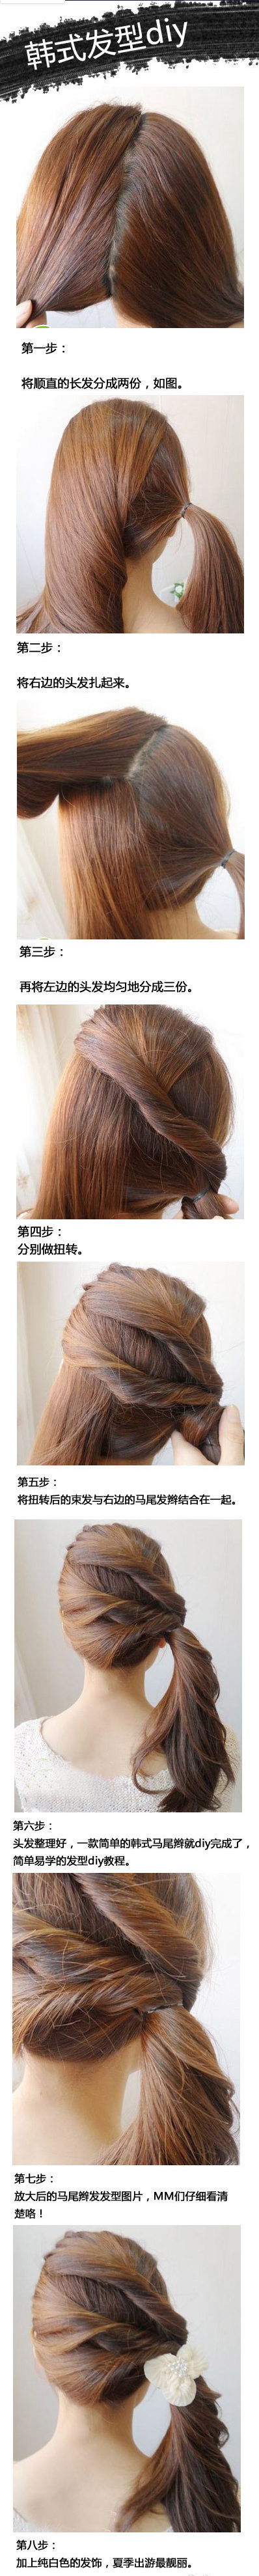 超美的一款韩式发型DIY